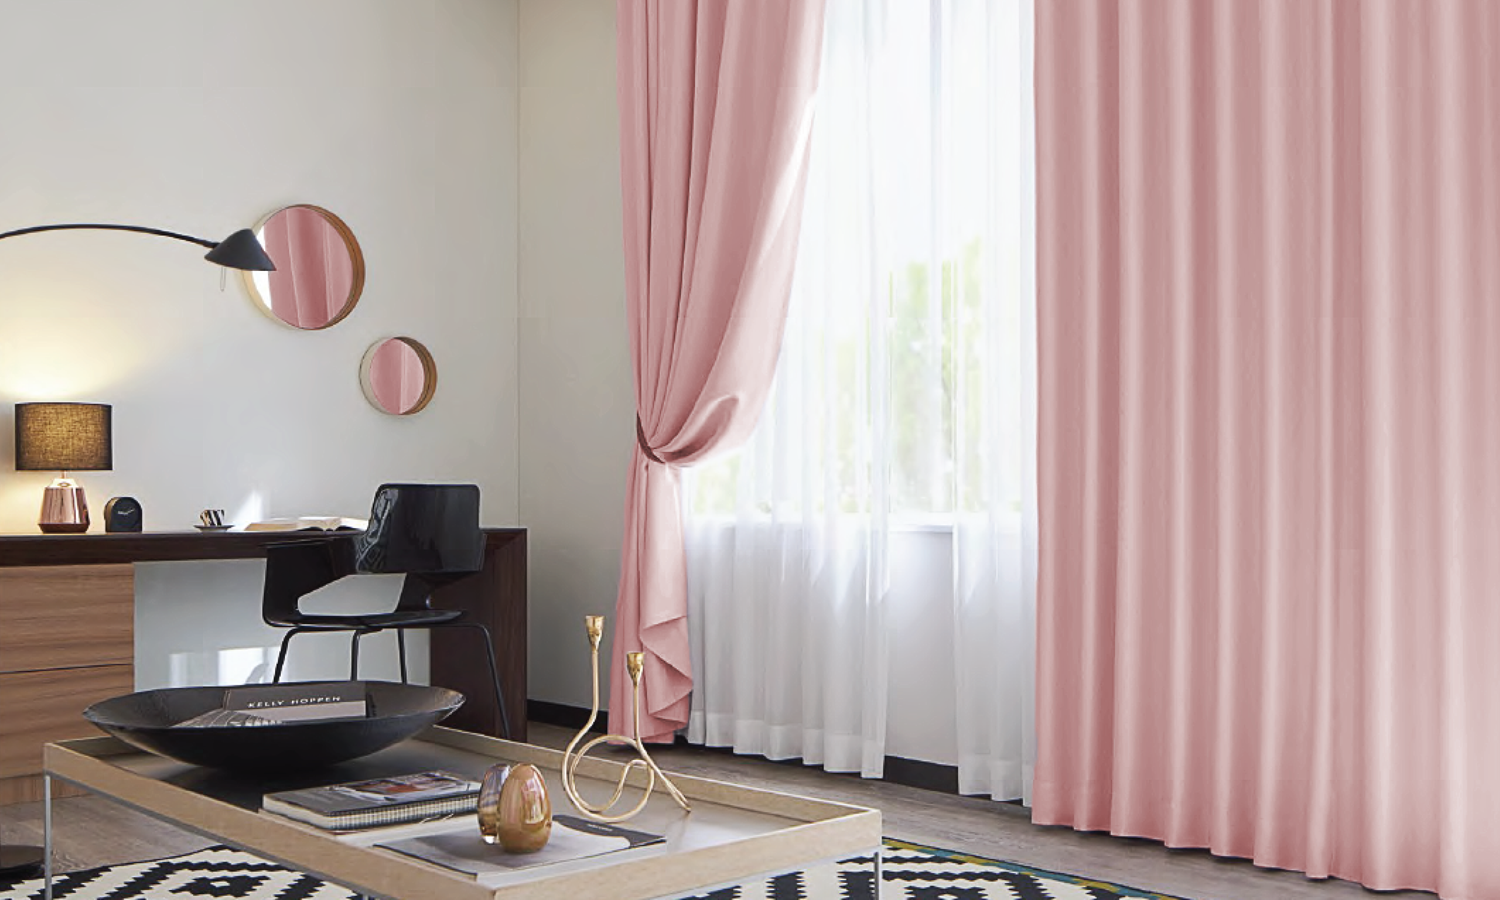 Với phòng khách rèm vải khiến cho căn nhà toát nên nét lịch sự và tinh tế, sự hiếu khách của chủ nhà